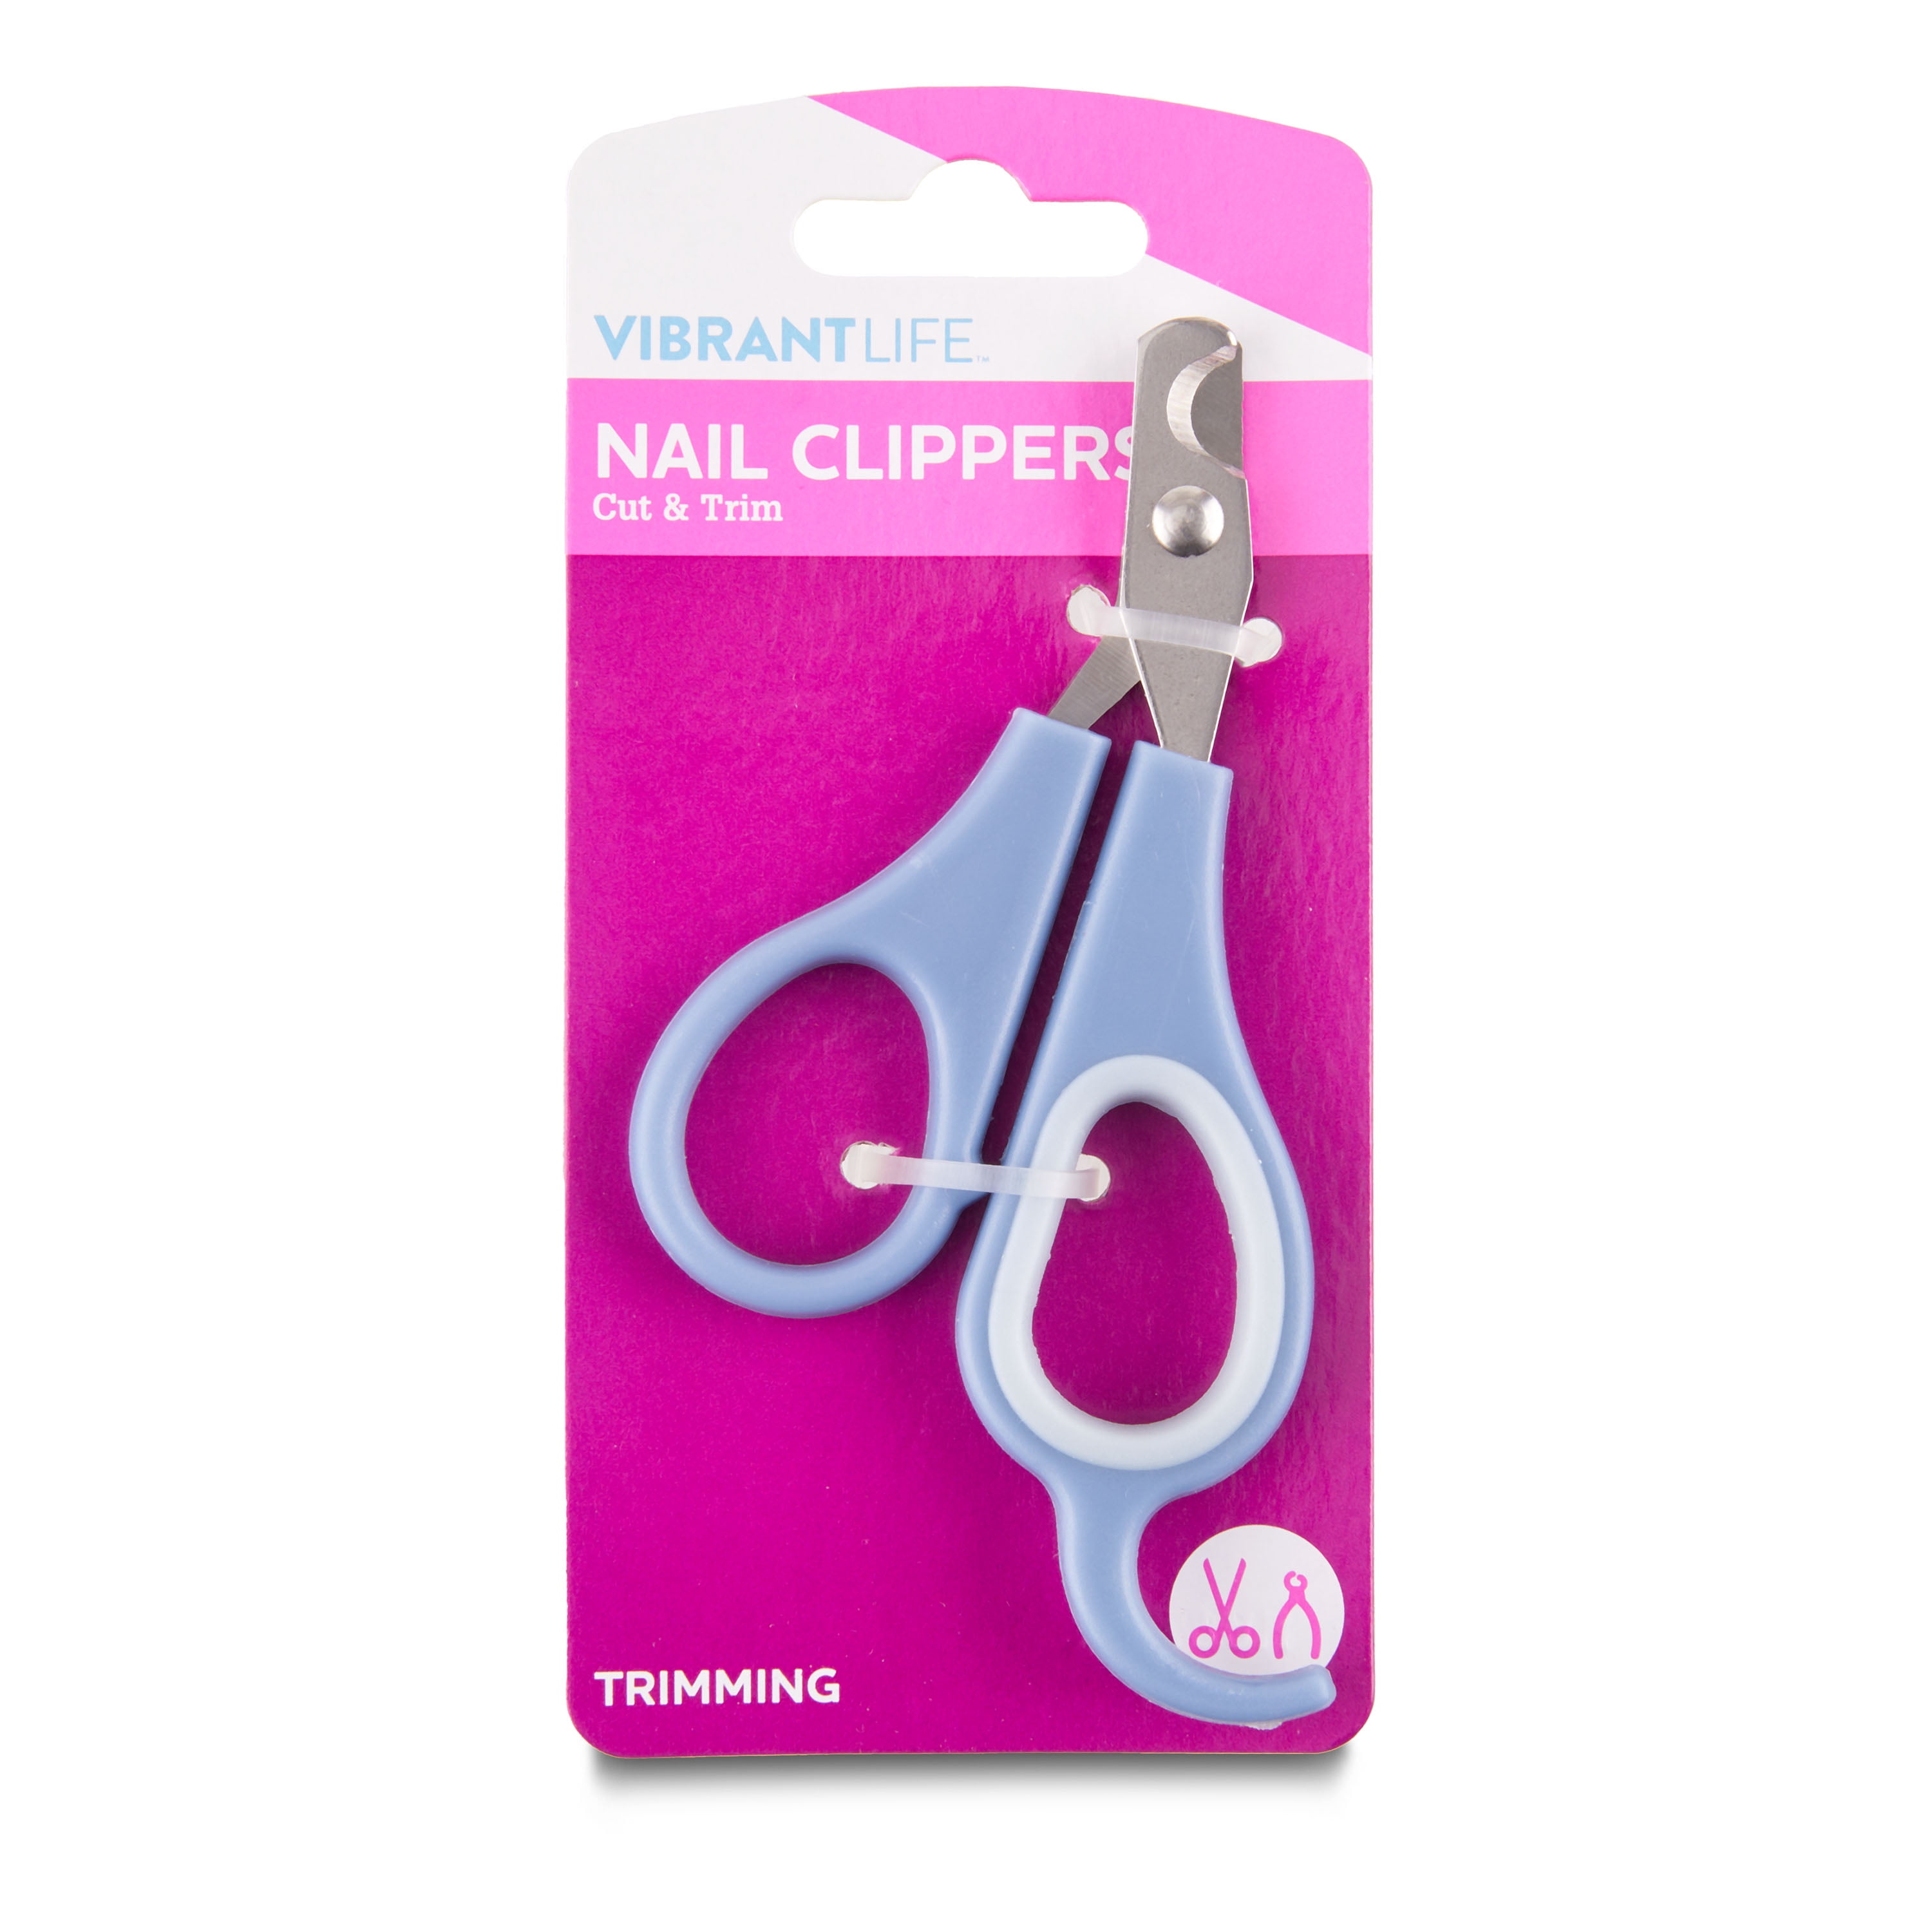 Who makes really good nail clippers? : r/BuyItForLife